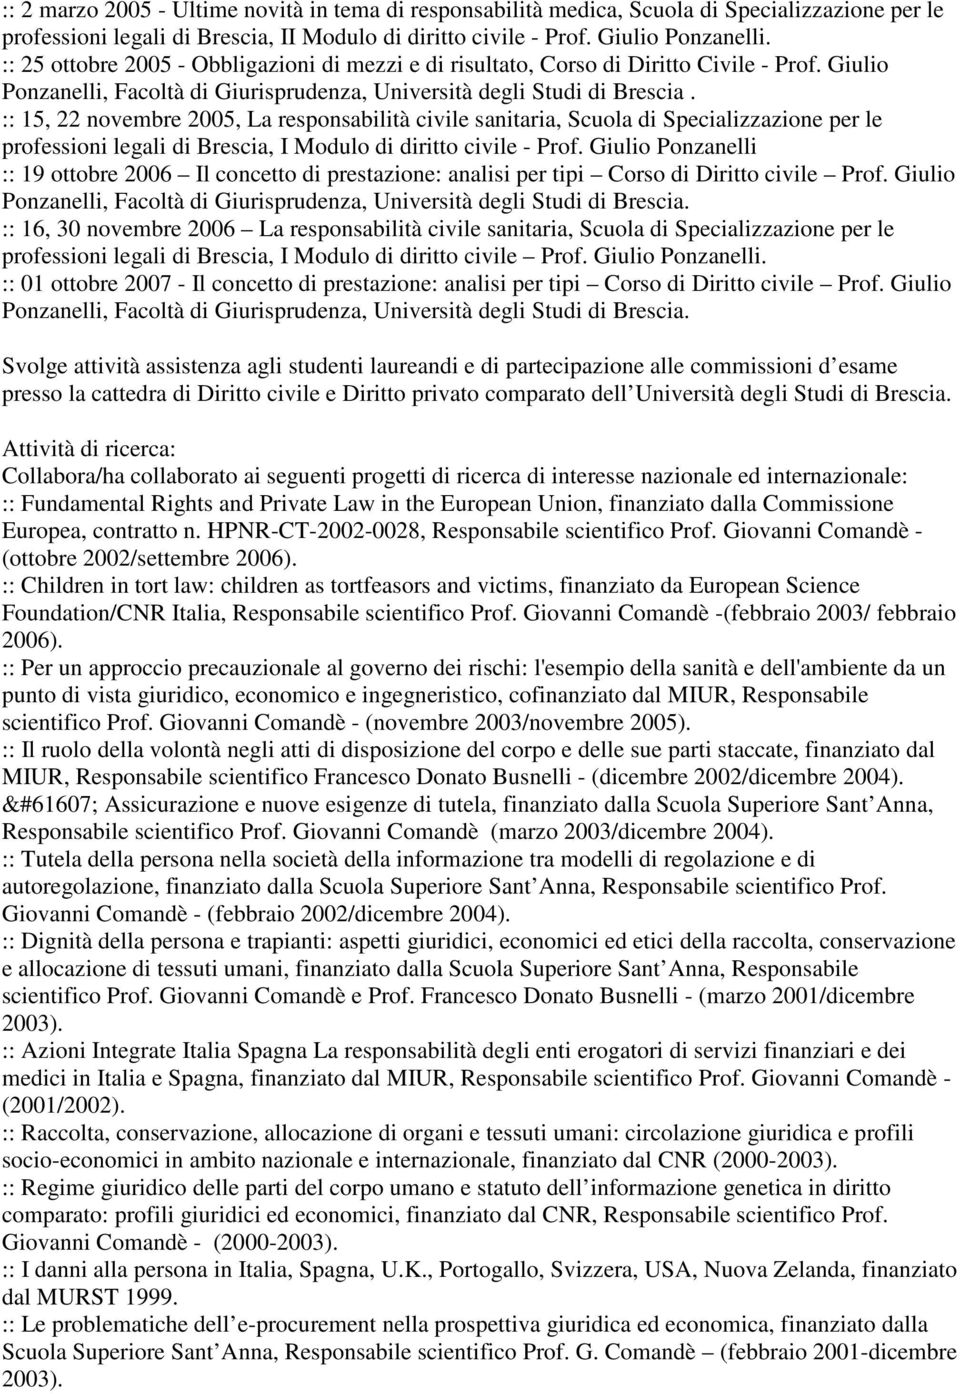 :: 15, 22 novembre 2005, La responsabilità civile sanitaria, Scuola di Specializzazione per le professioni legali di Brescia, I Modulo di diritto civile - Prof.